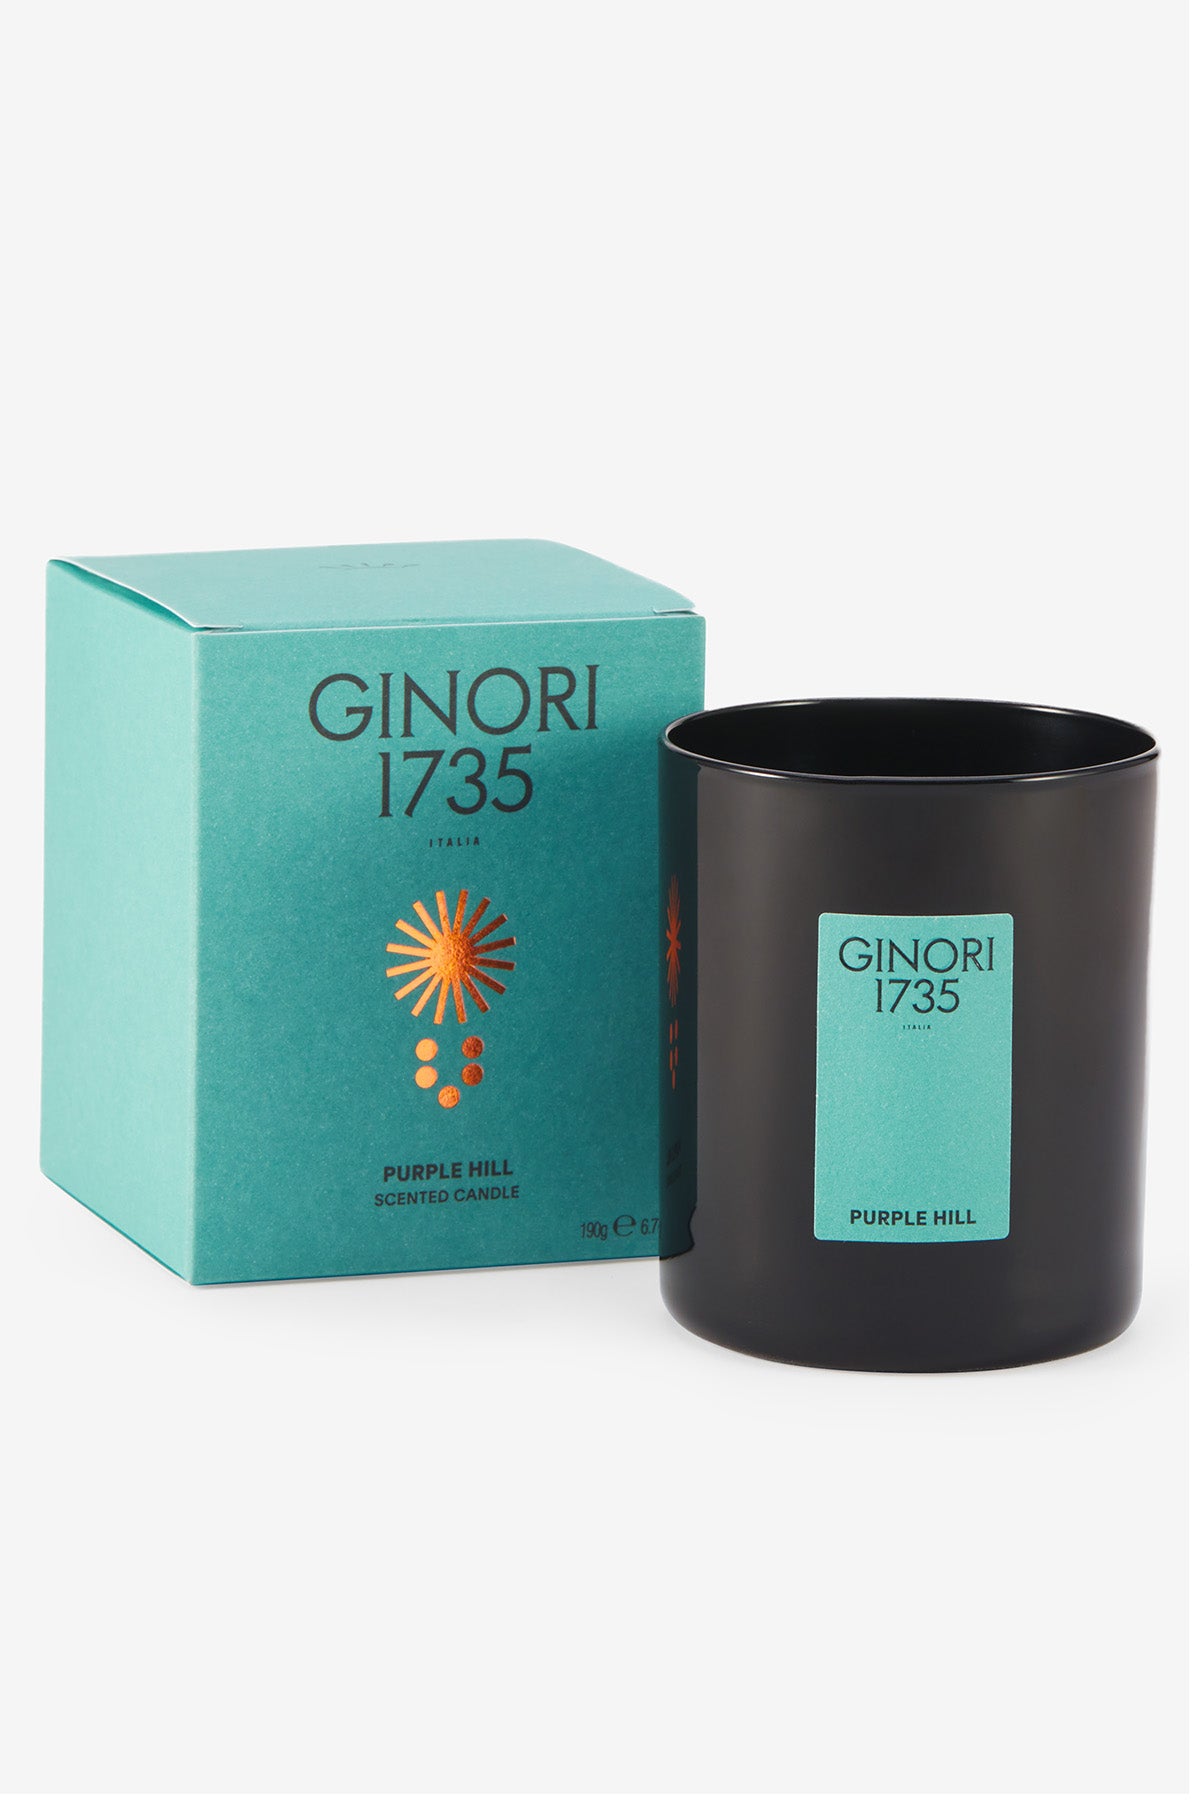 Ginori 1735 purple hill scented candle refill for il seguace 190 gr-2